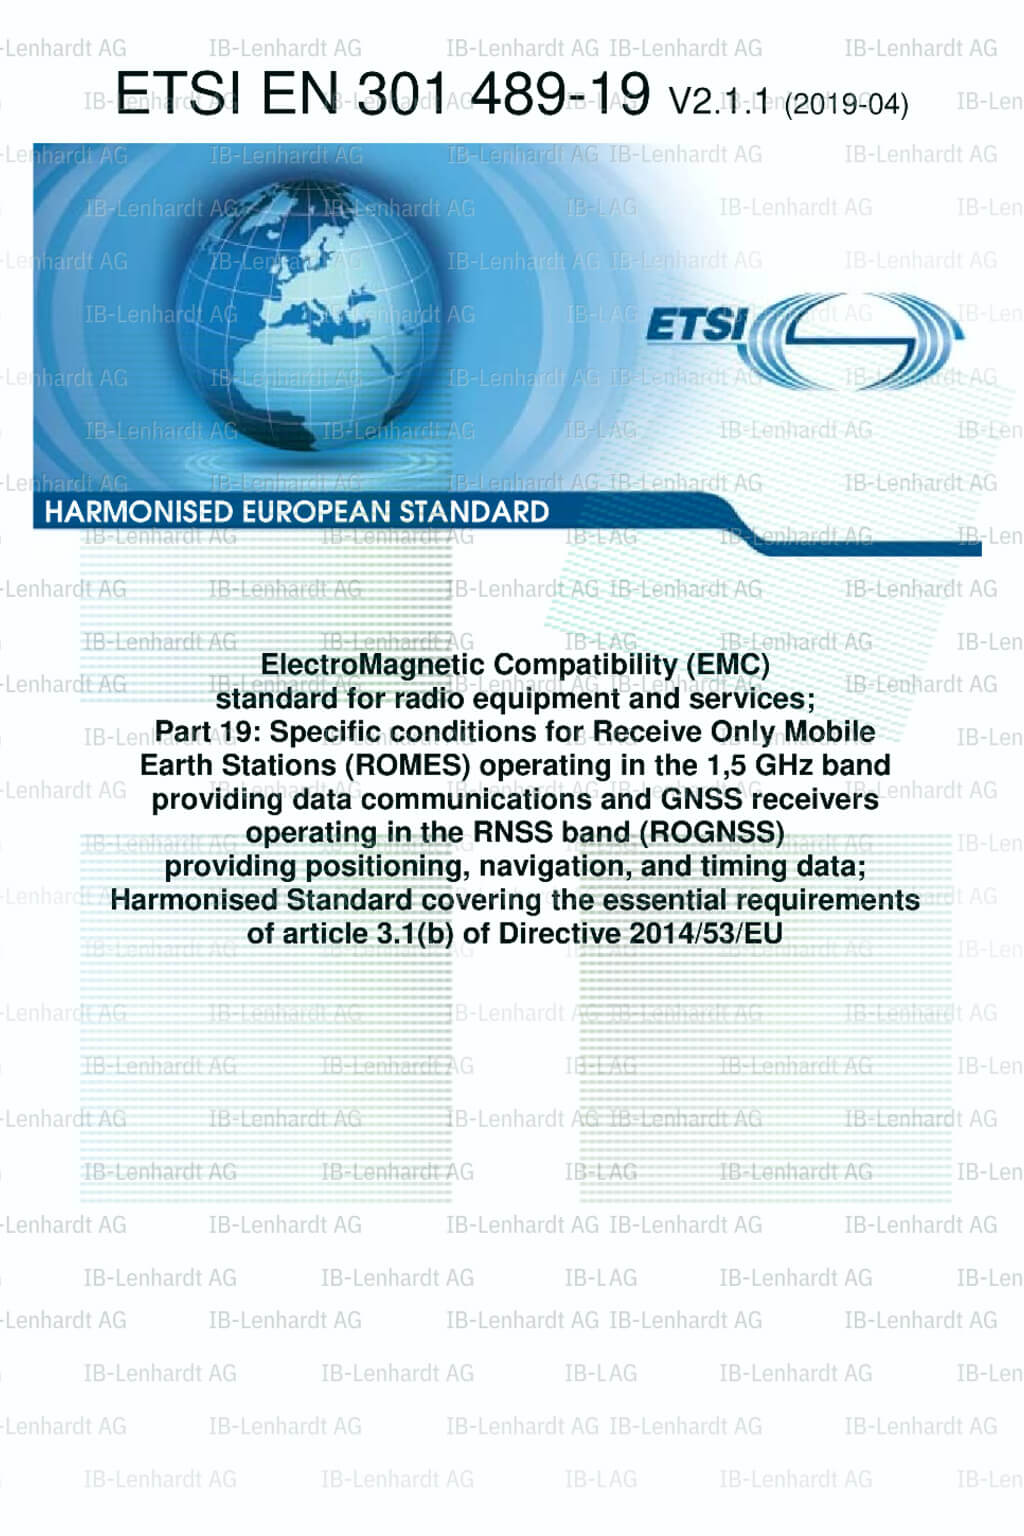 ETSI EN 301 489-19 V2.1.1